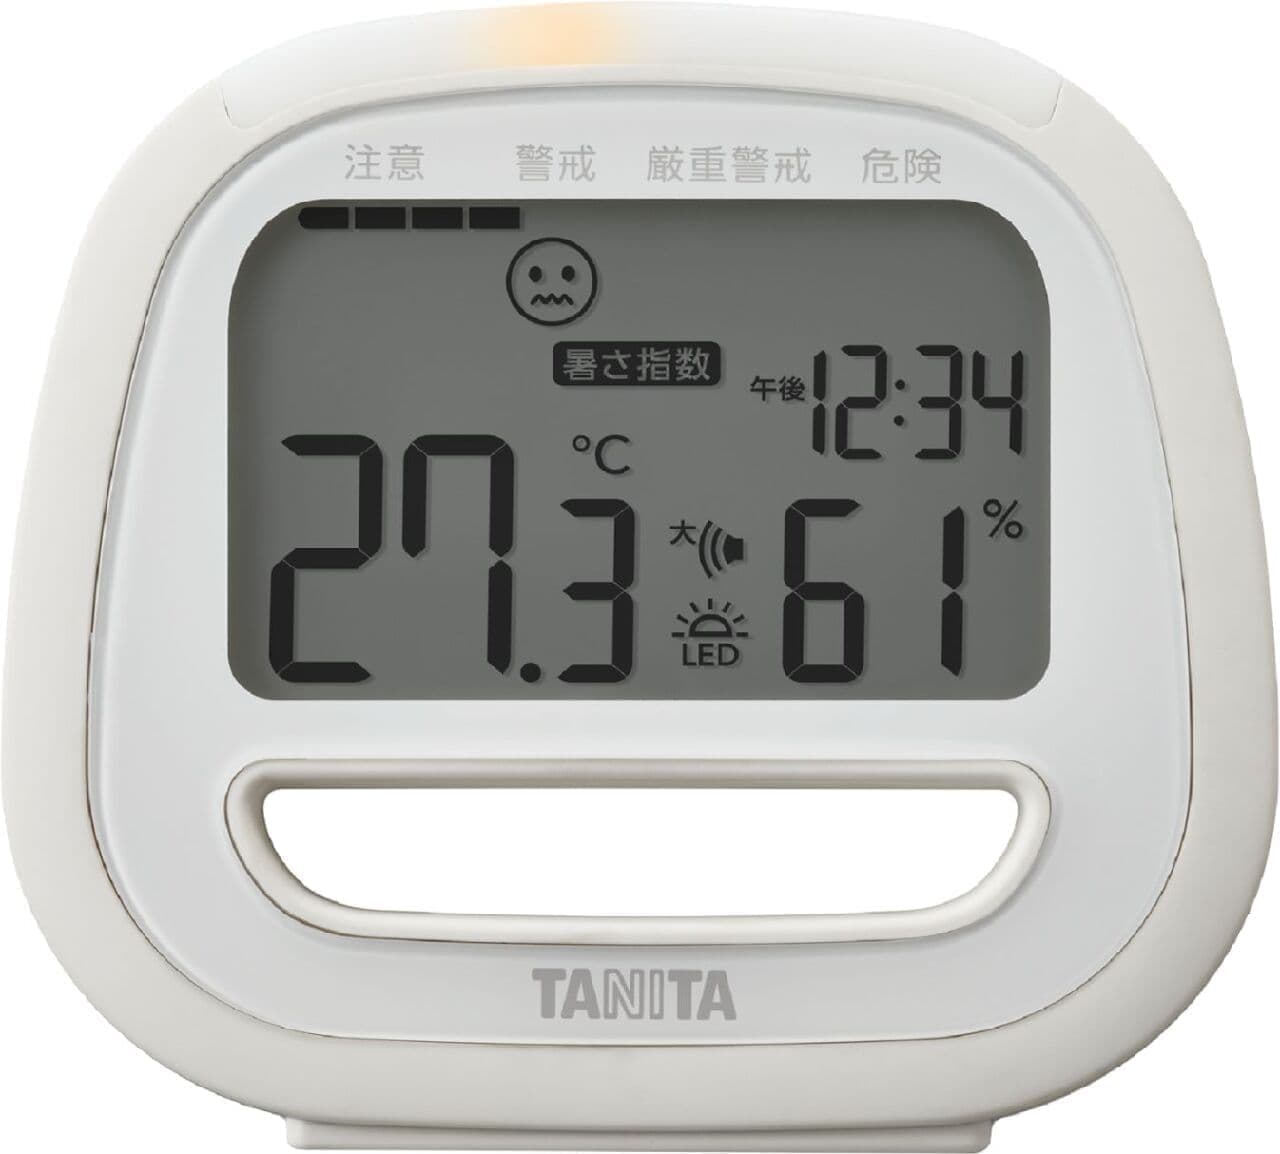 タニタ コンディションセンサー「TC-422」